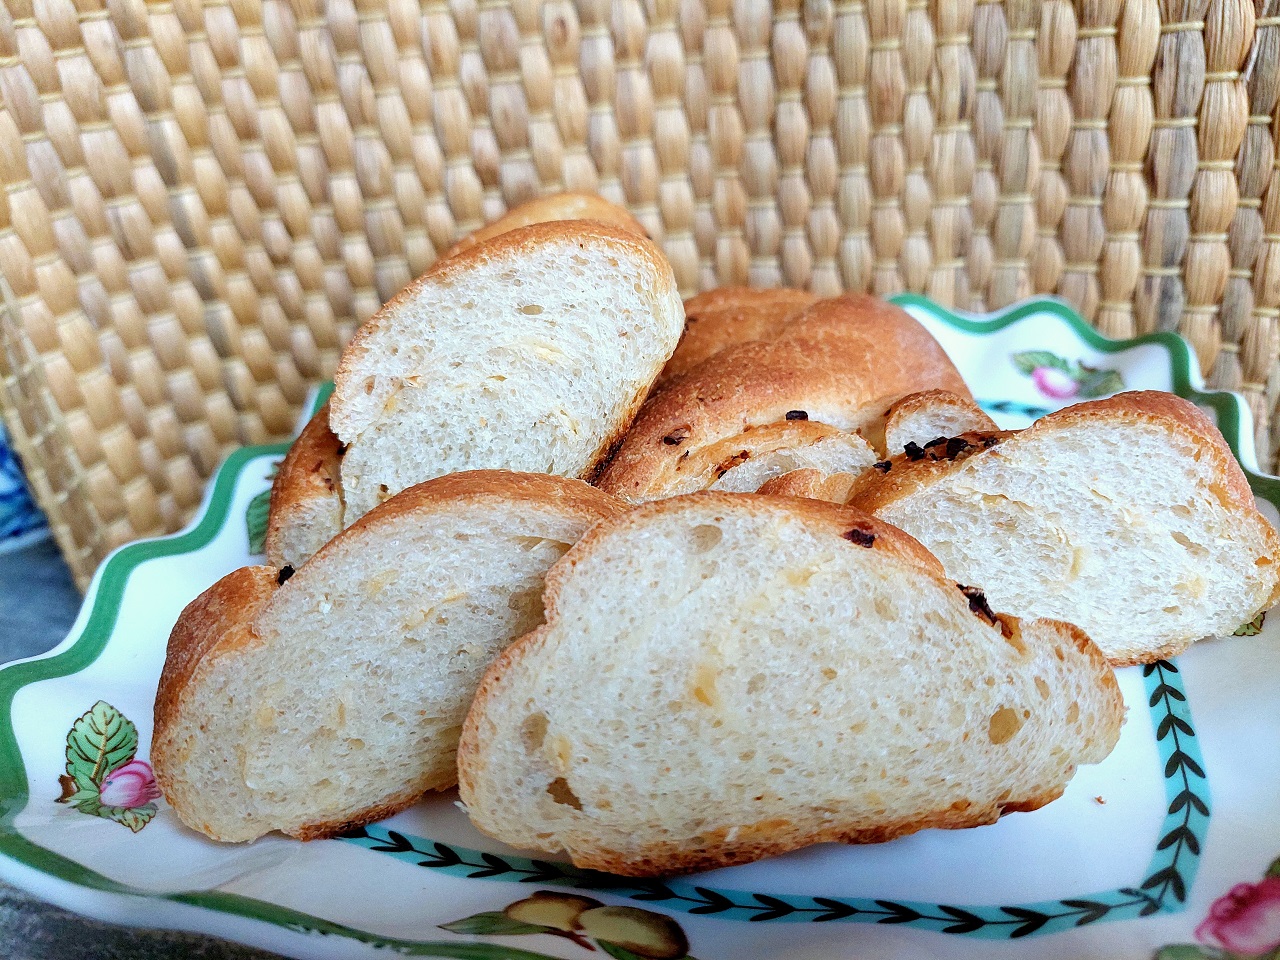 Хлеб луковый на пшённой муке.Яркий, ароматный вкус хлеба.